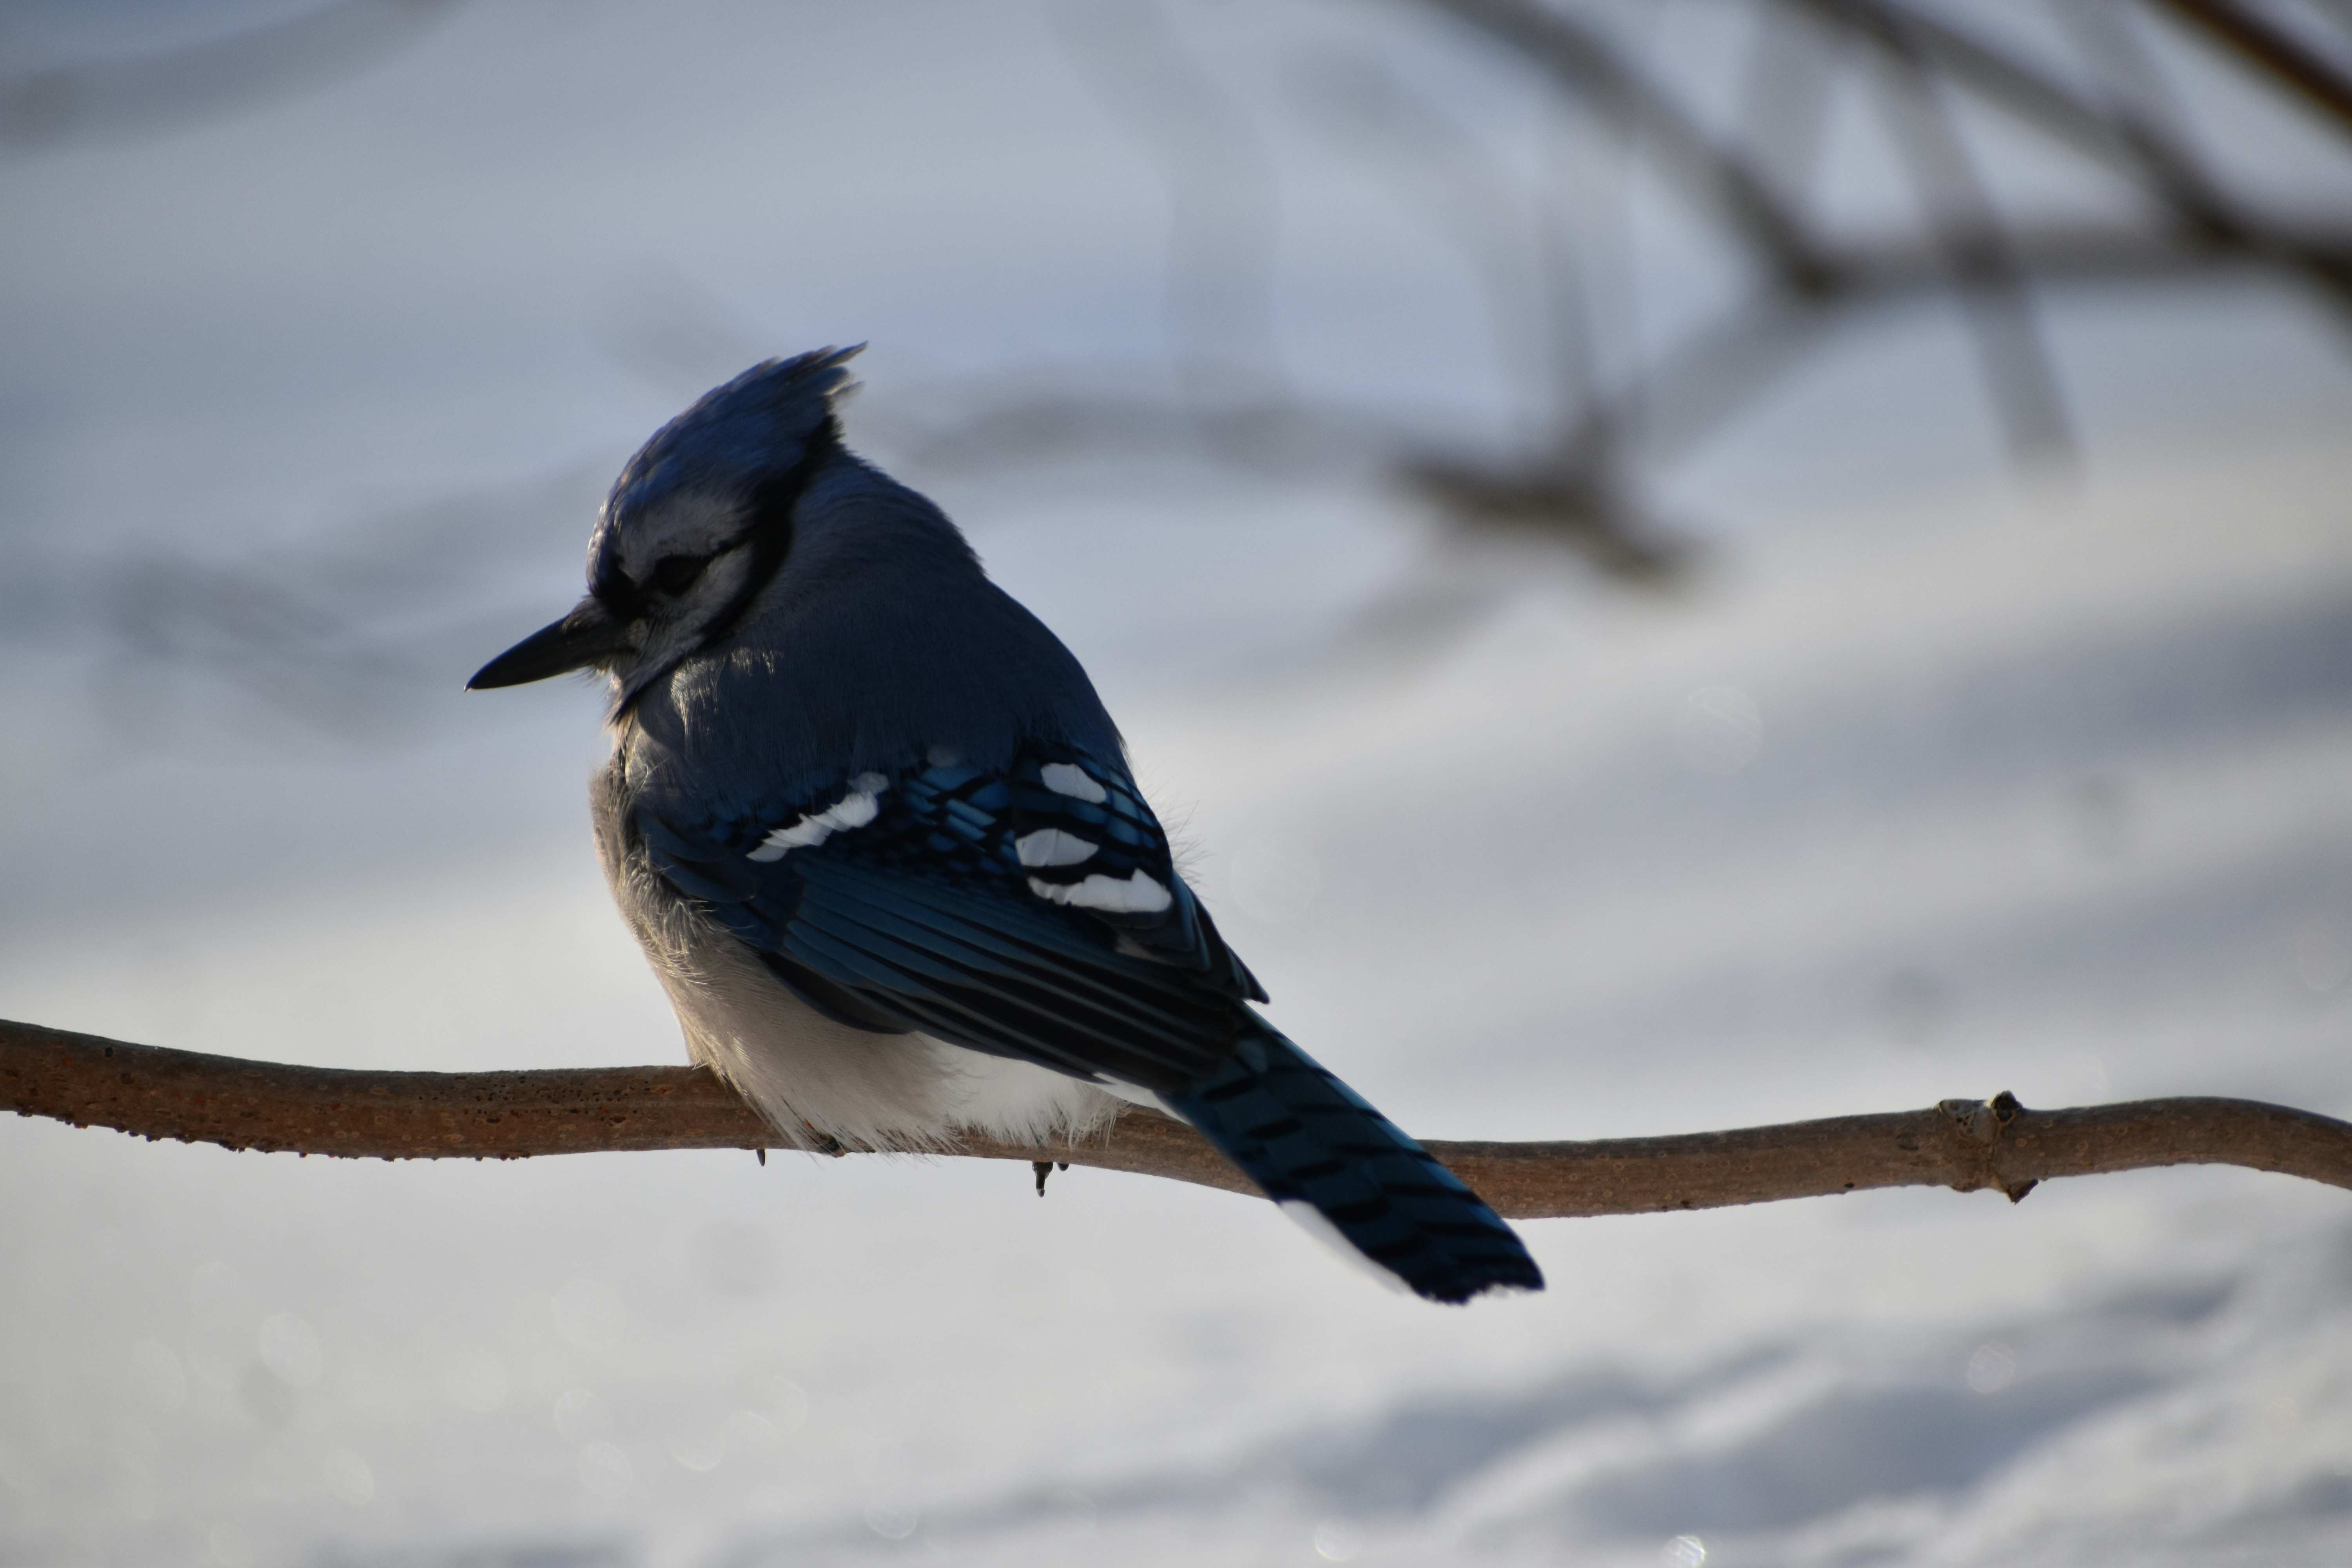 A blue jay in winter, Sainte-Apolline, Québec, Canada